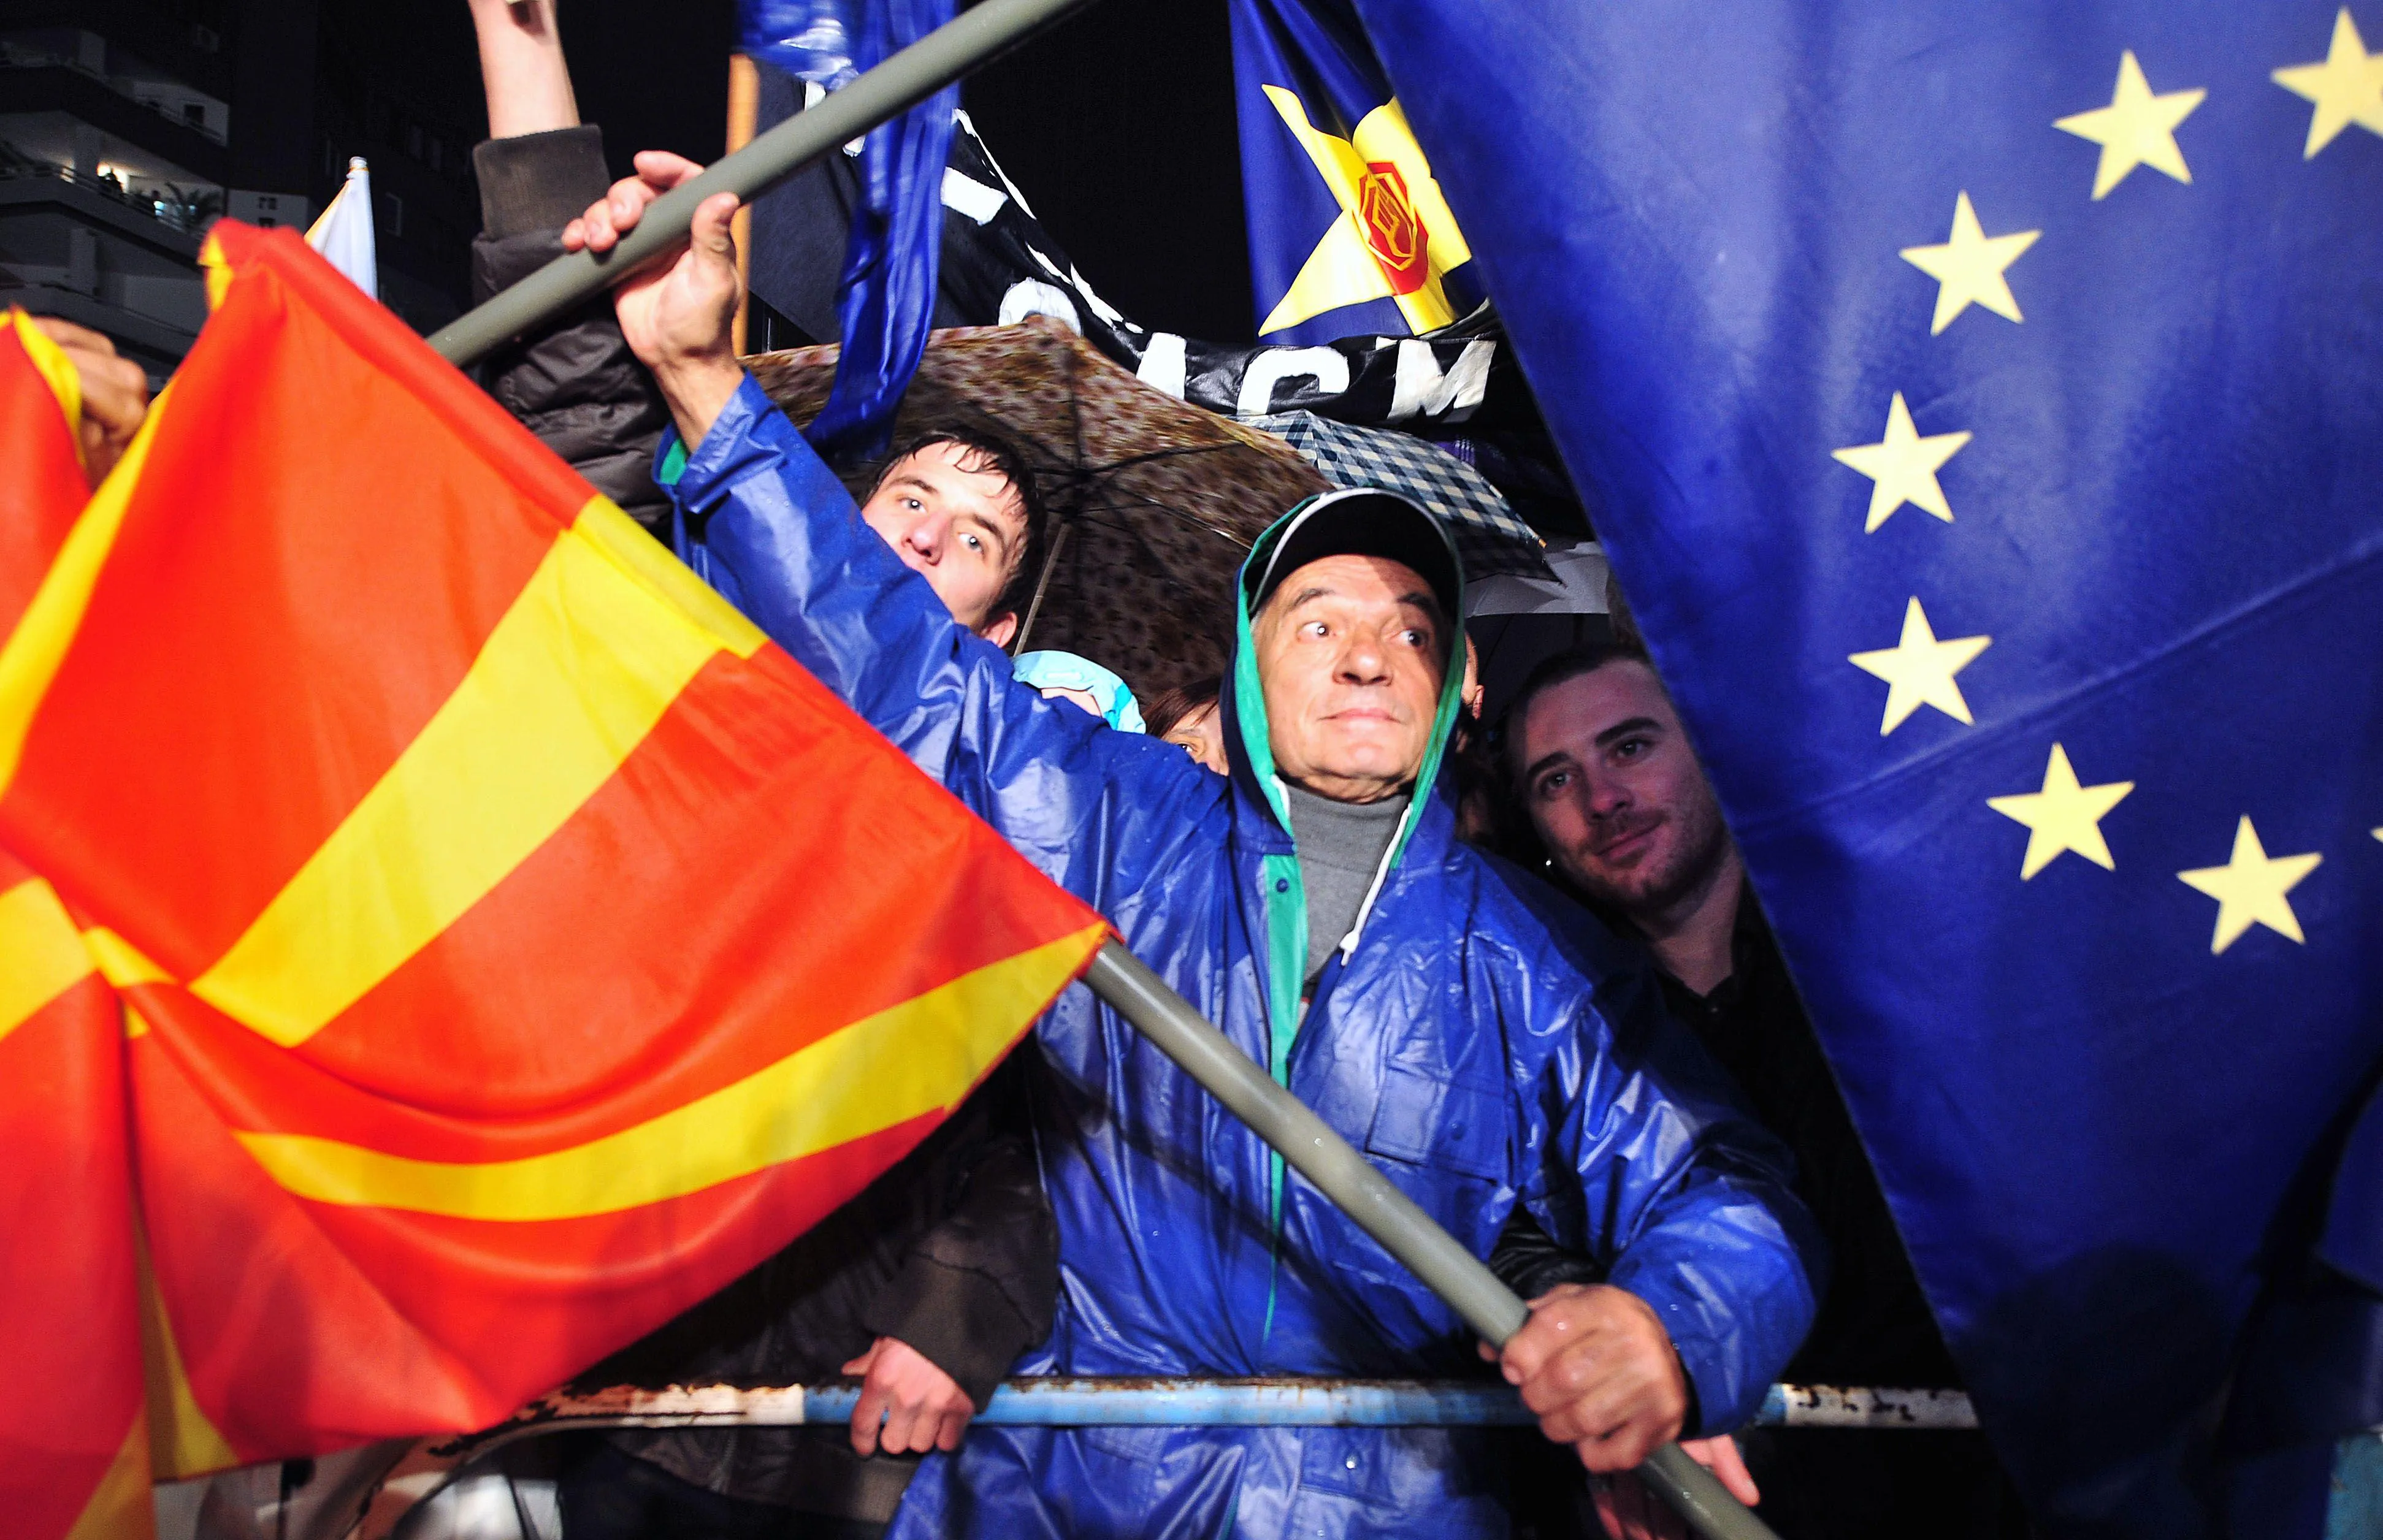 Евросоюз предложит балканским странам частичную интеграцию – СМИ